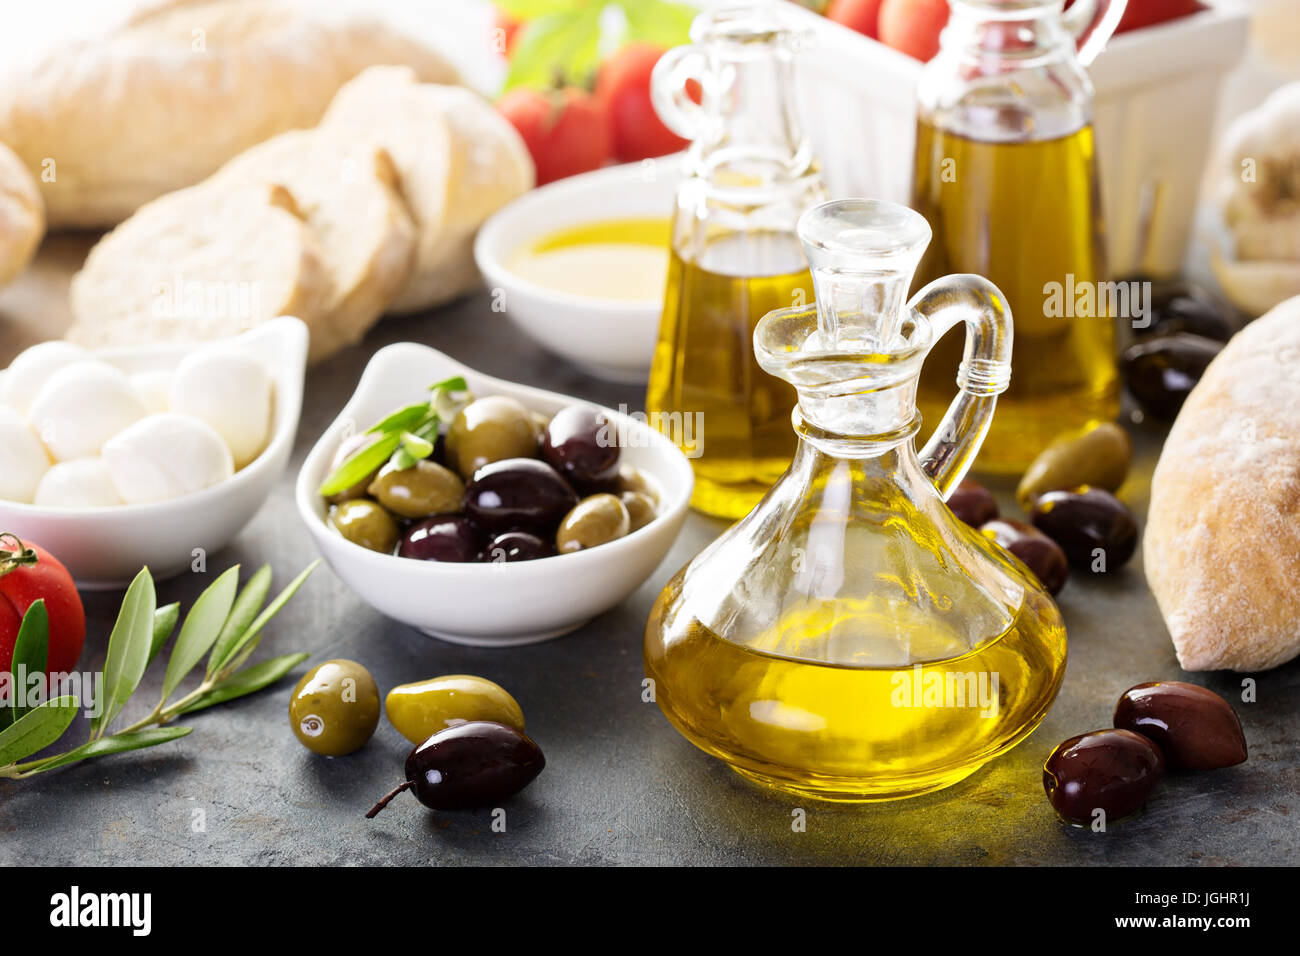 Cucina mediterranea con olio d'oliva, formaggi e pane Foto Stock